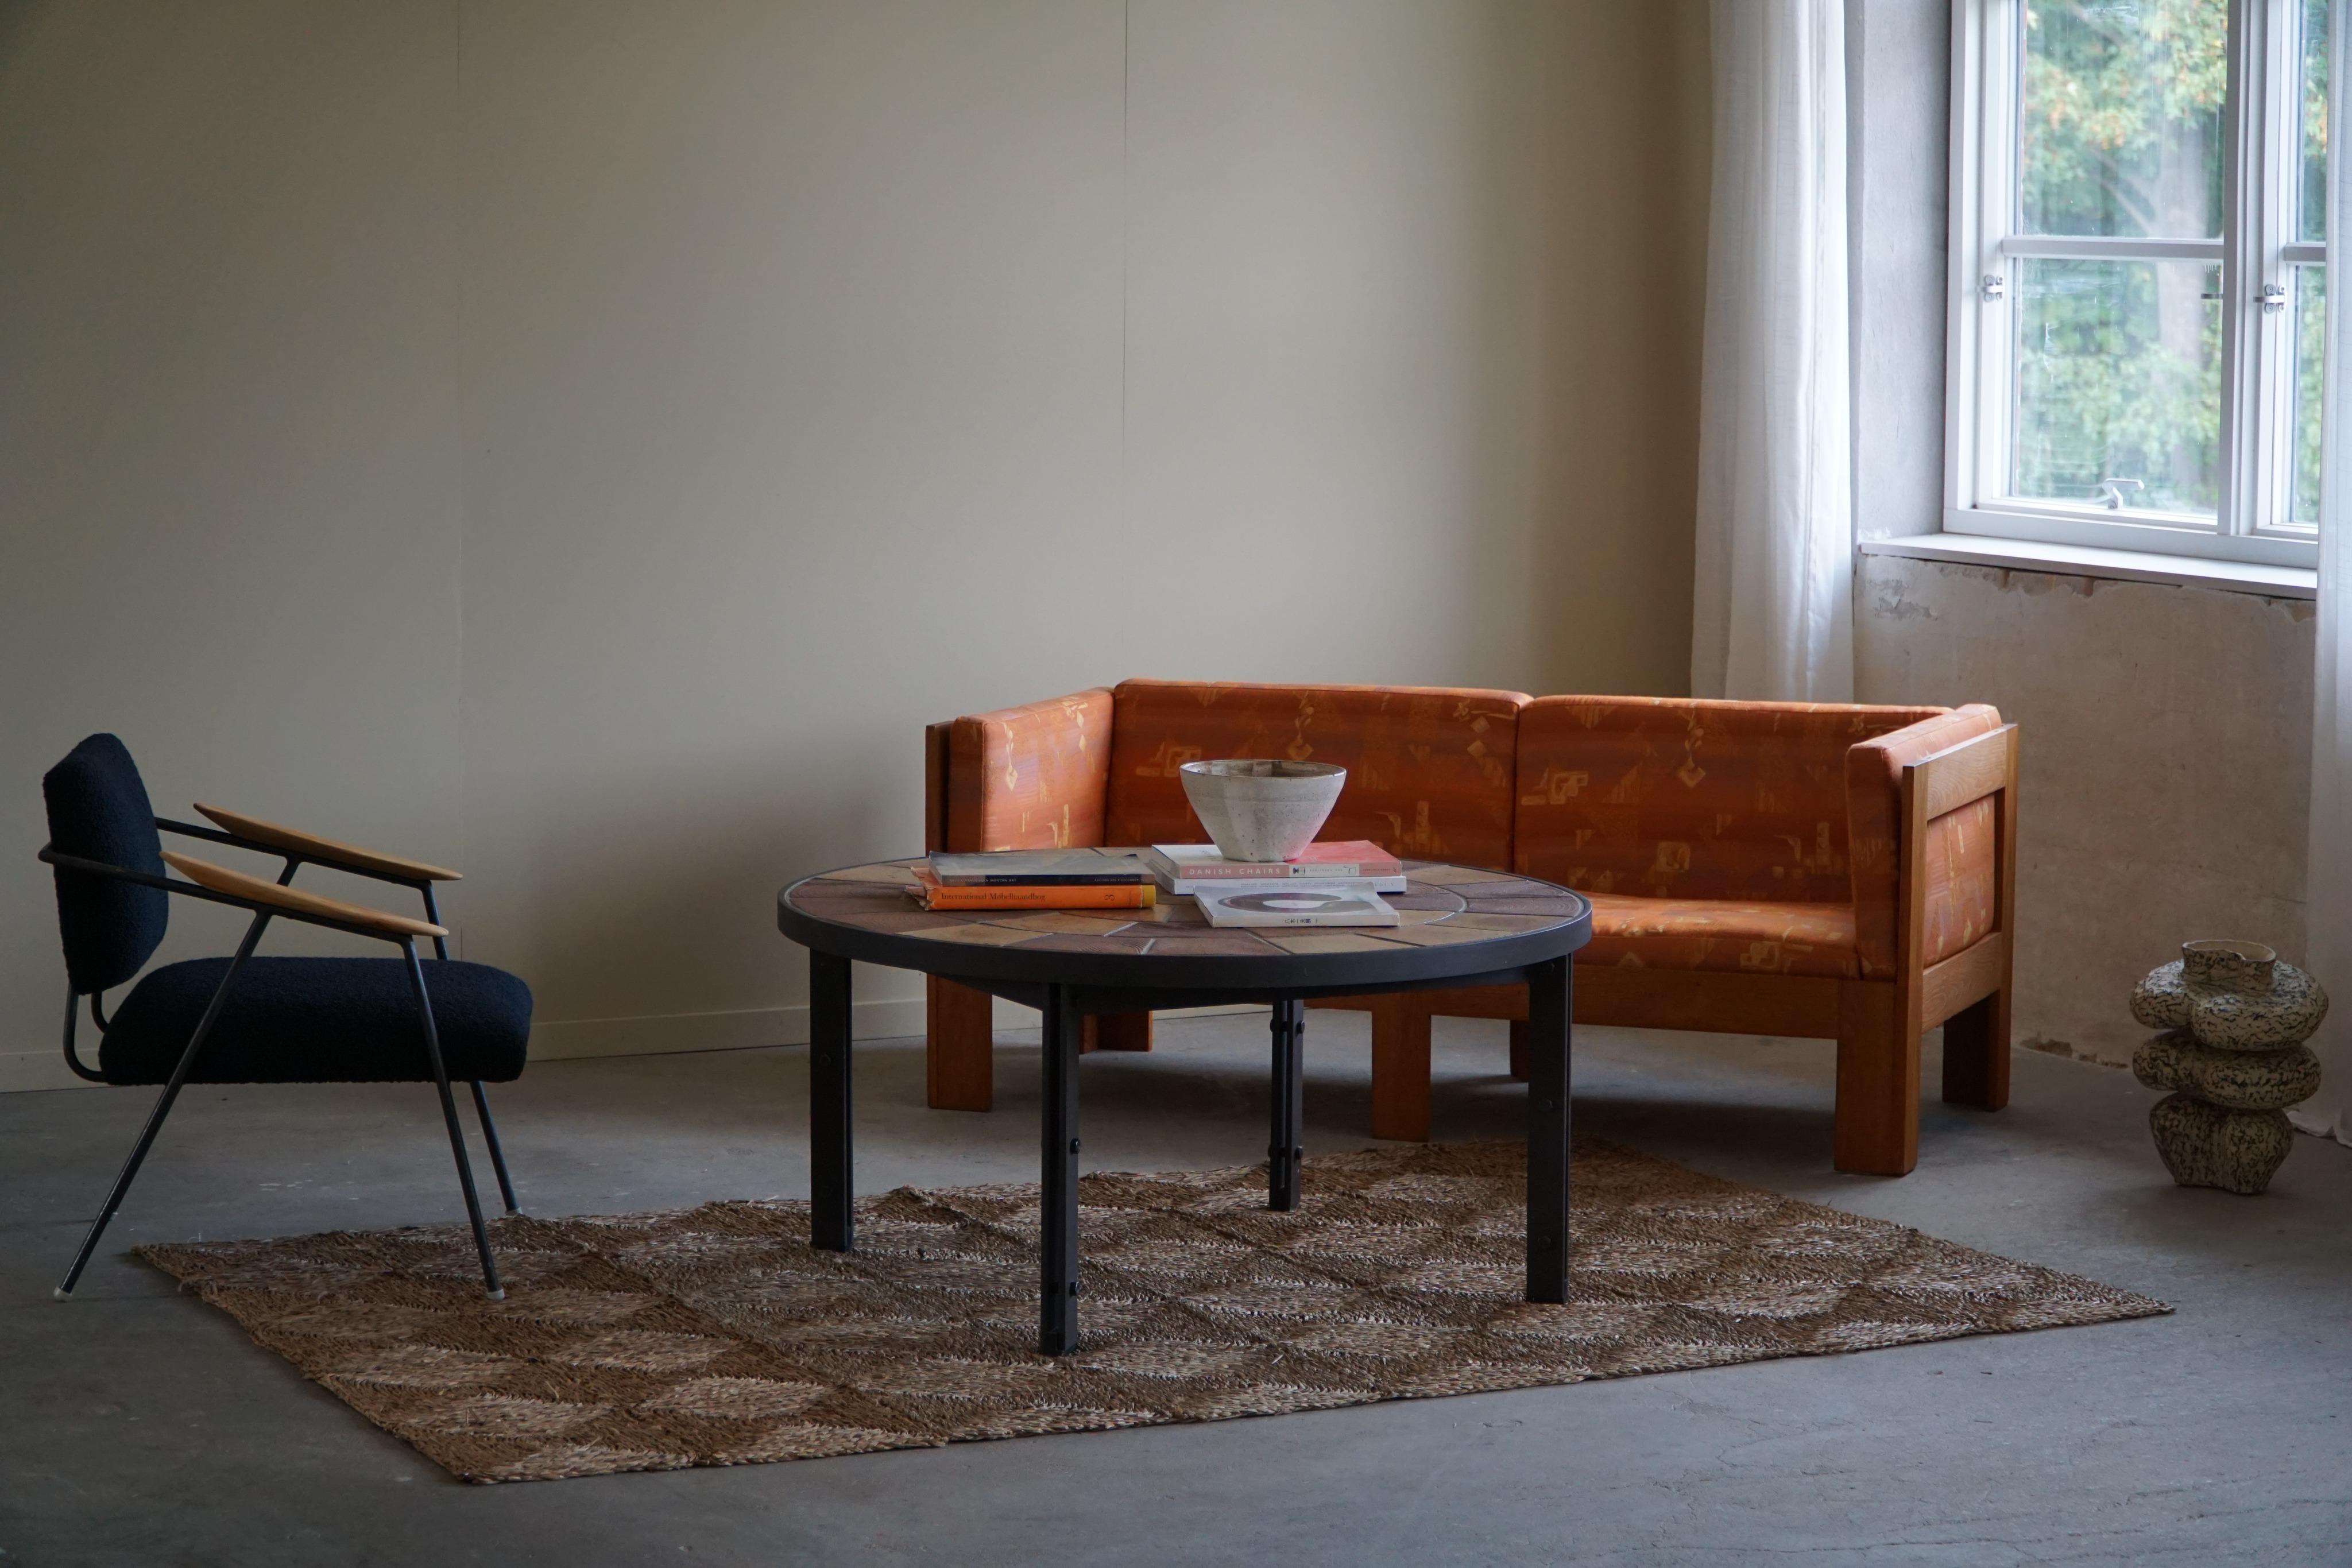 Une magnifique grande table basse ronde / table de canapé avec une structure en acier et des carreaux de céramique faits à la main dans des couleurs terreuses. Fabriqué au Danemark dans les années 1970 par Sallingboe. Conçu par Britt